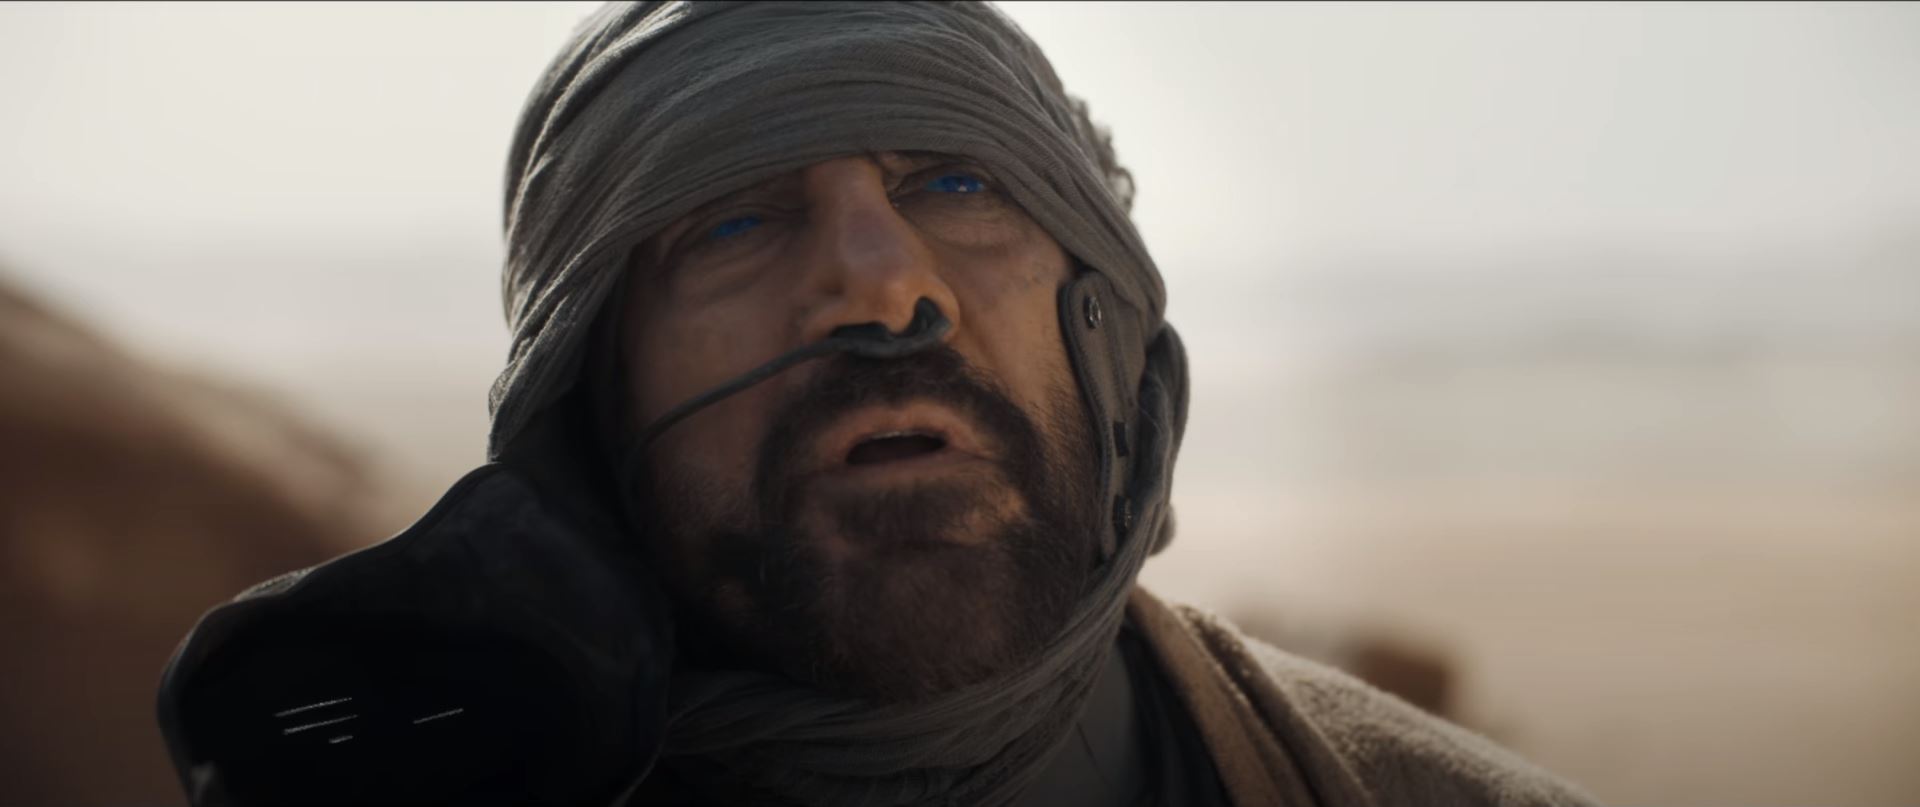 Dune movie trailer Javier Bardem as Stilgar